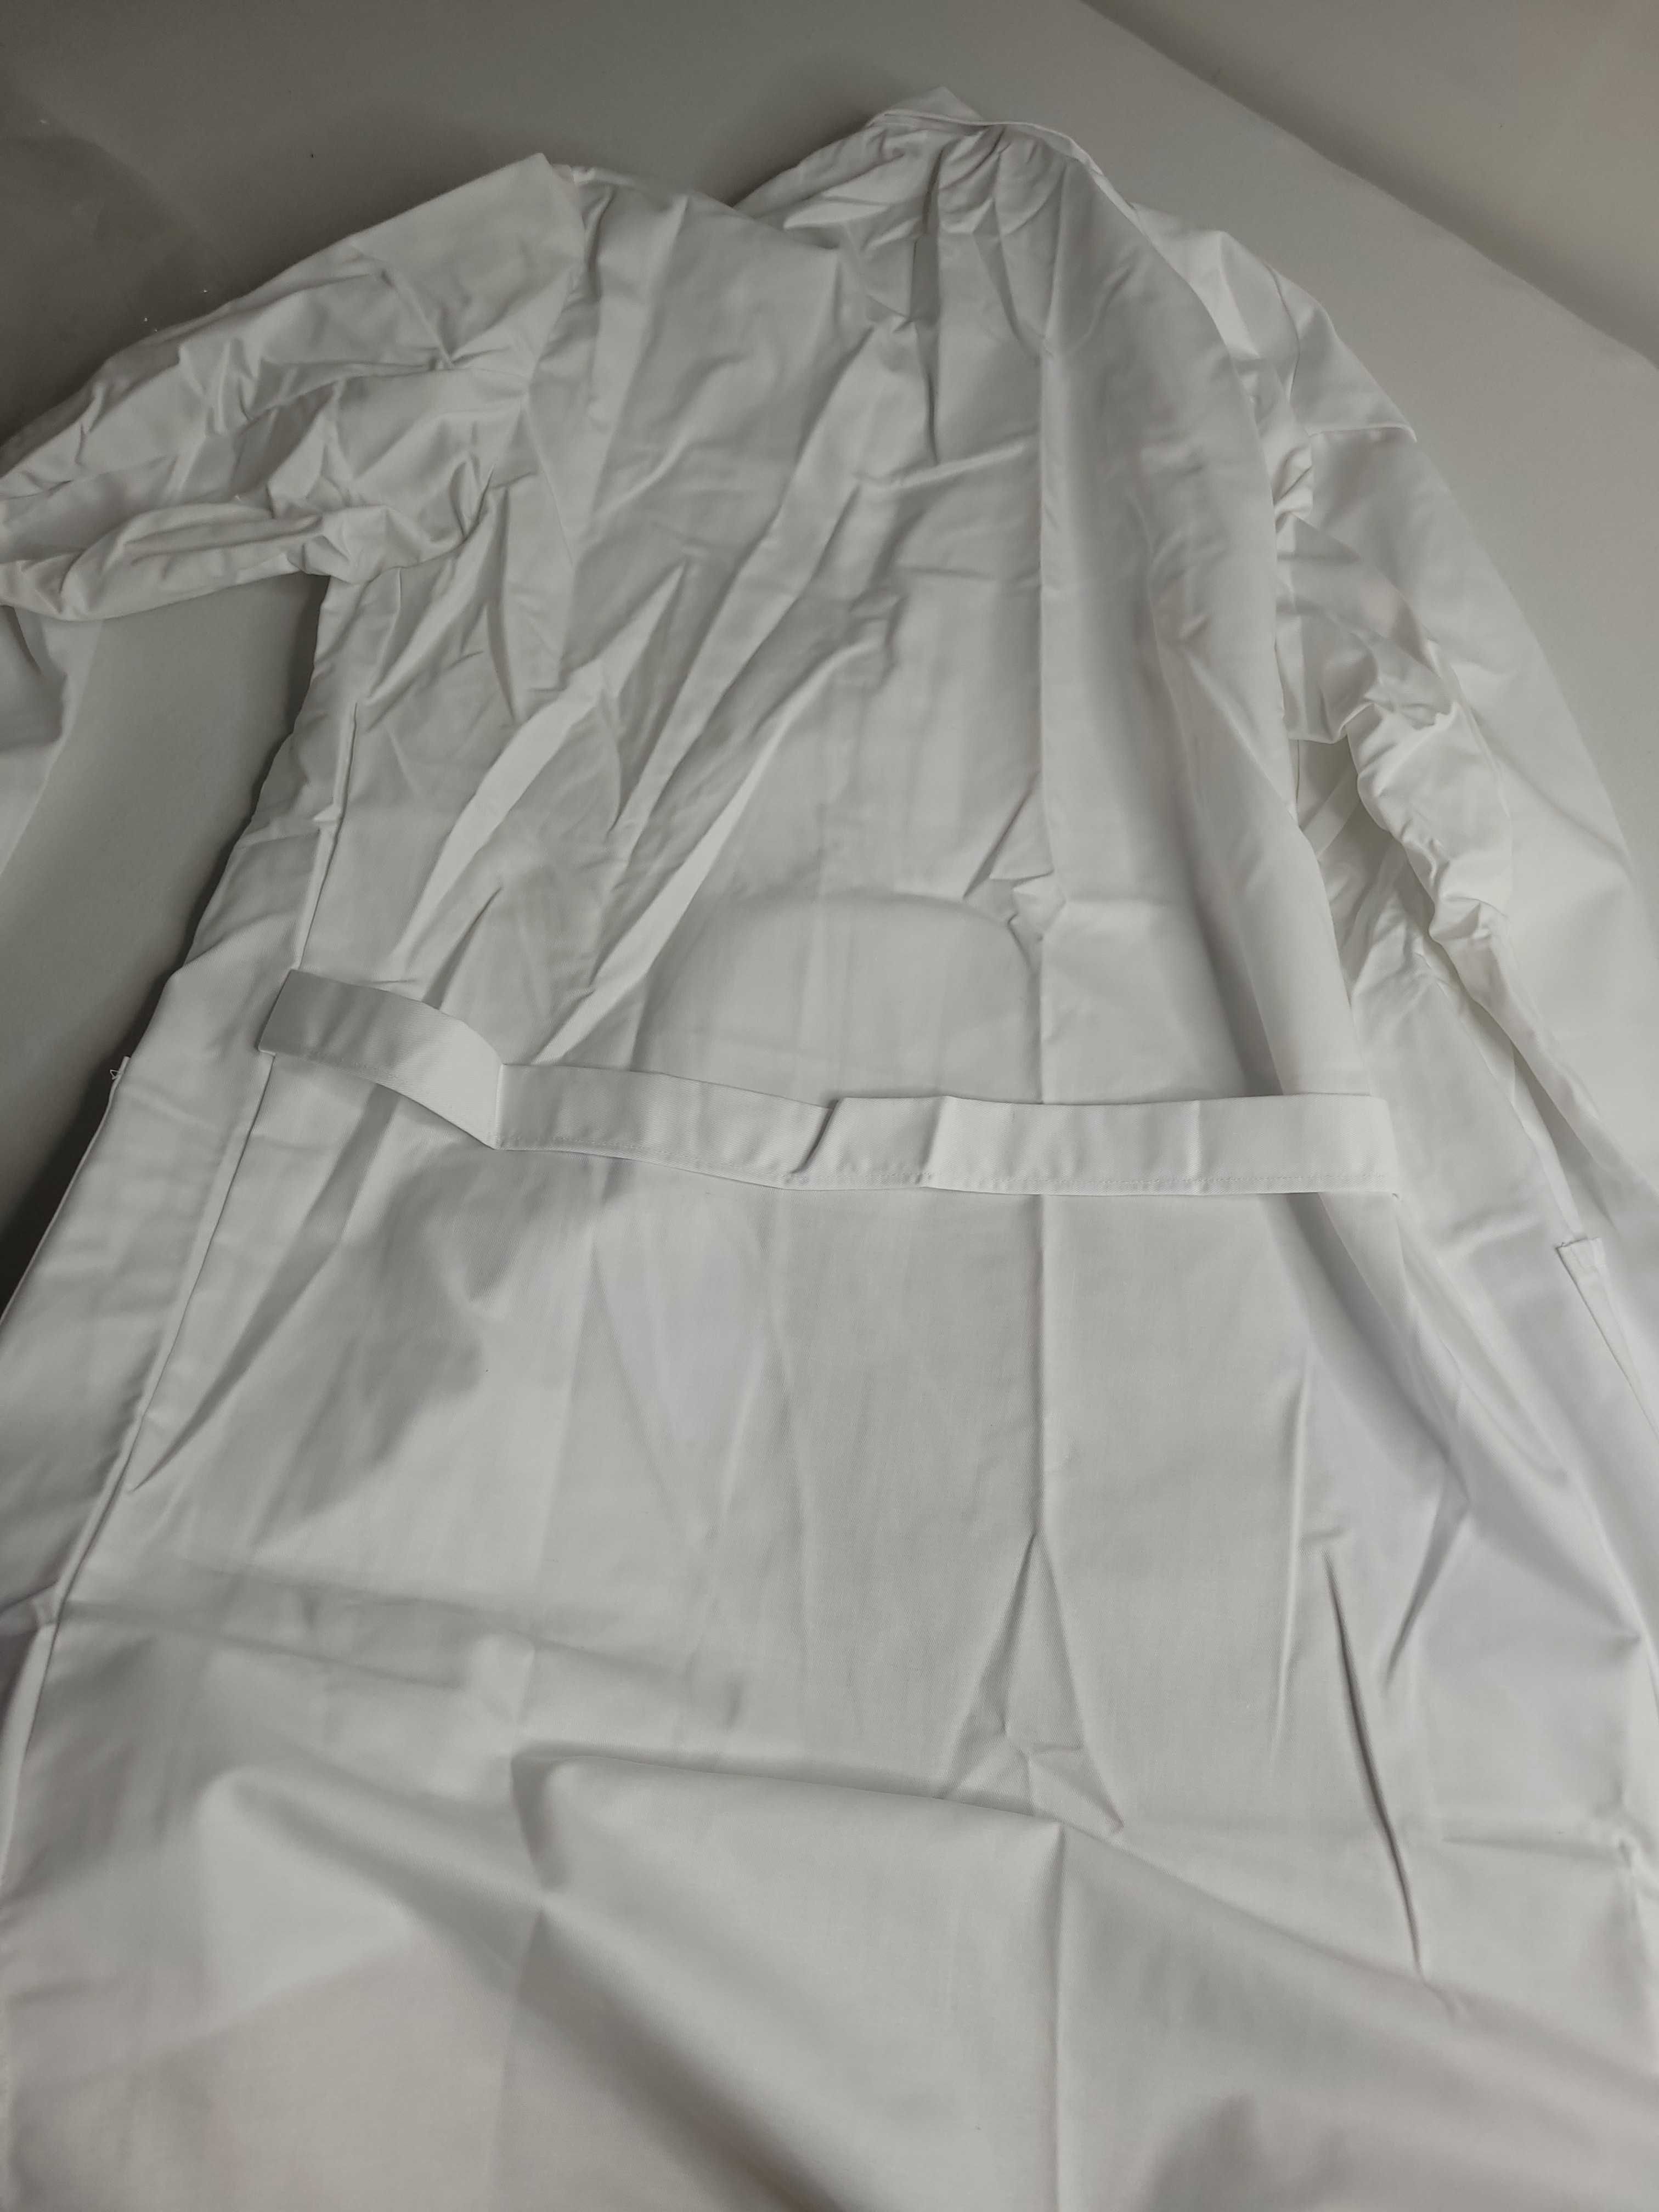 Халат робочий білий плотний форма робоча 52 німеччина